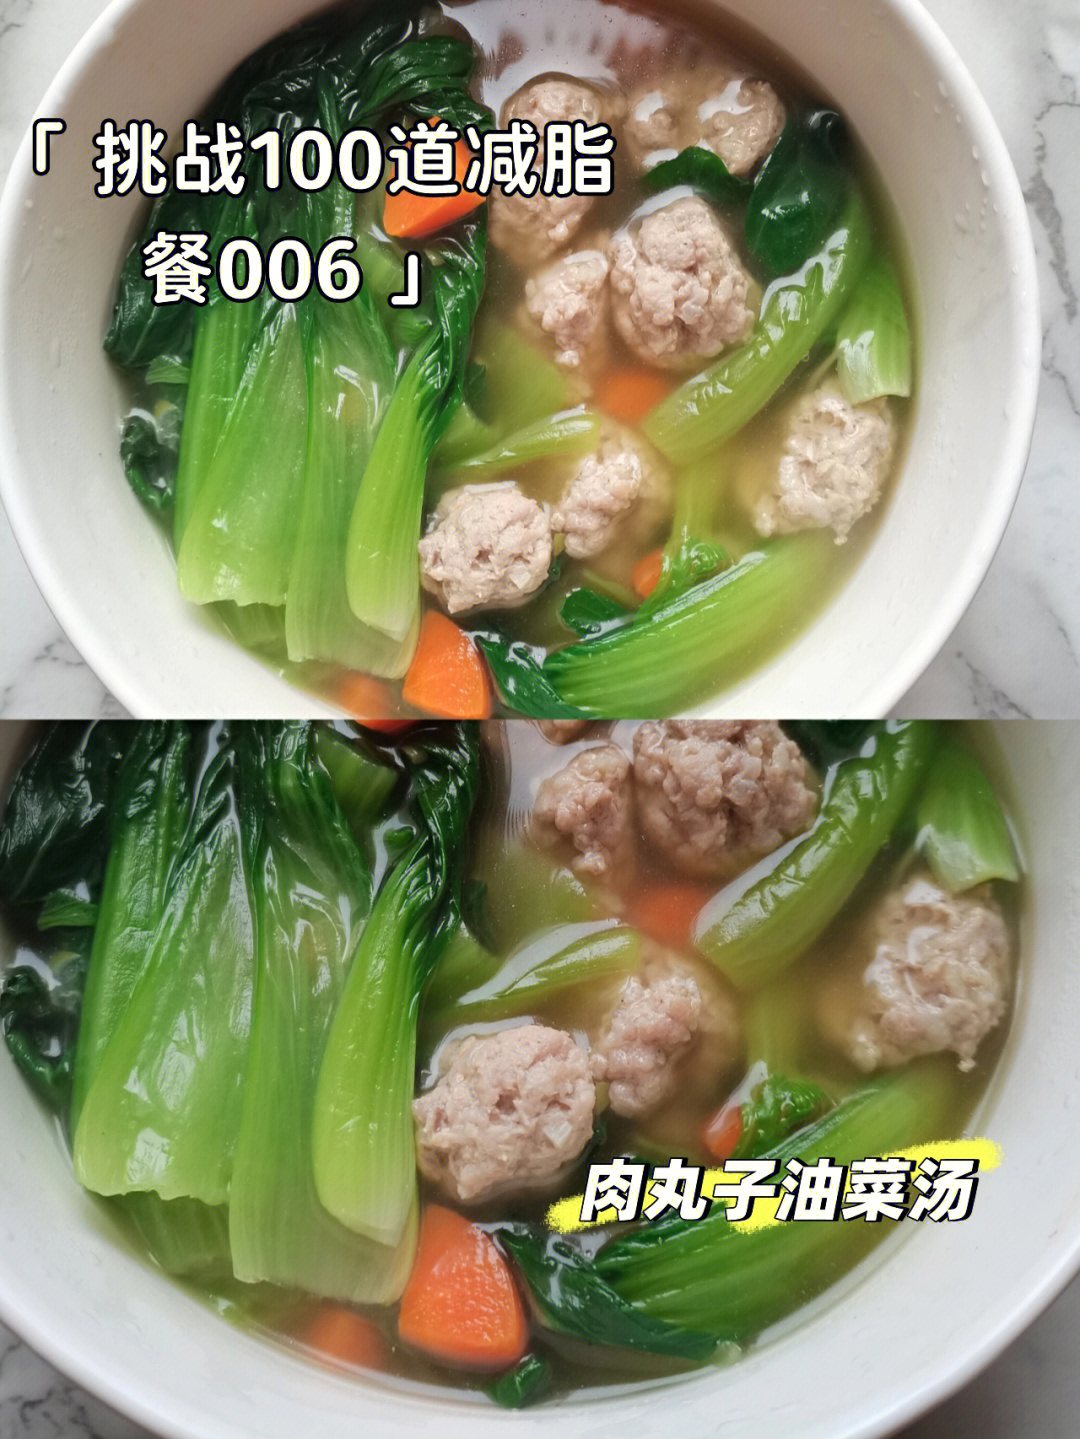 93食材:精瘦猪肉馅(菜市场新鲜的),小油菜,胡萝卜